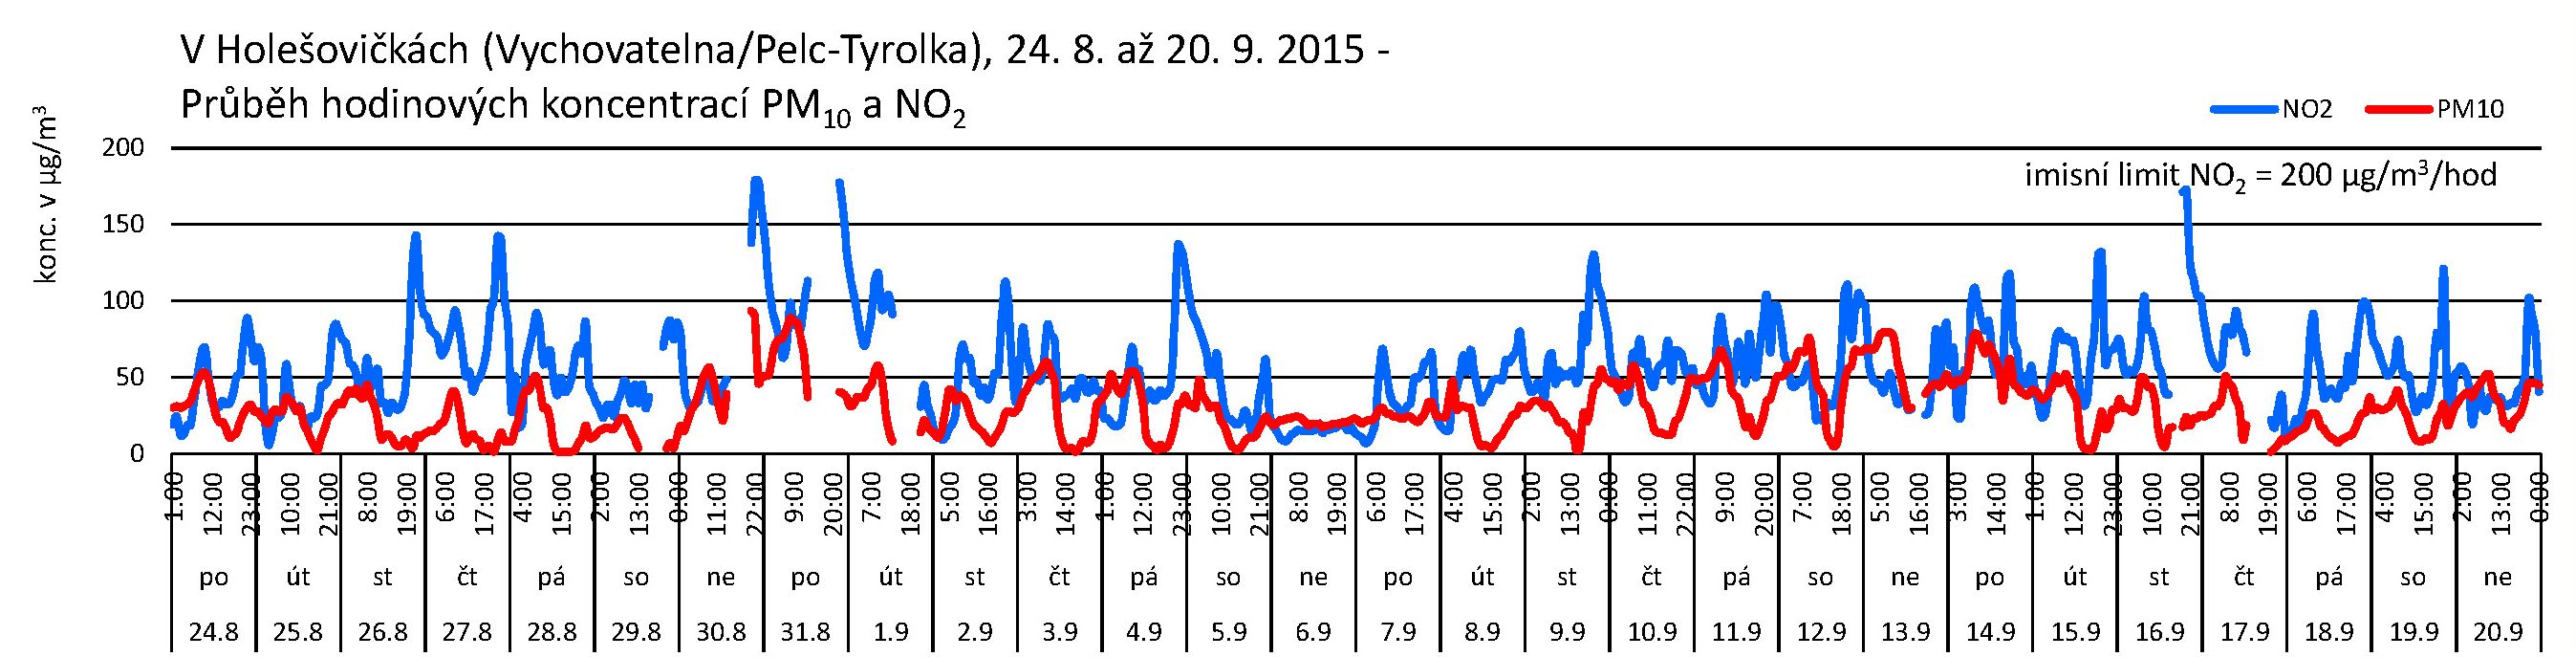 V Holešovičkách - 09.2015 - NO2 a PM10